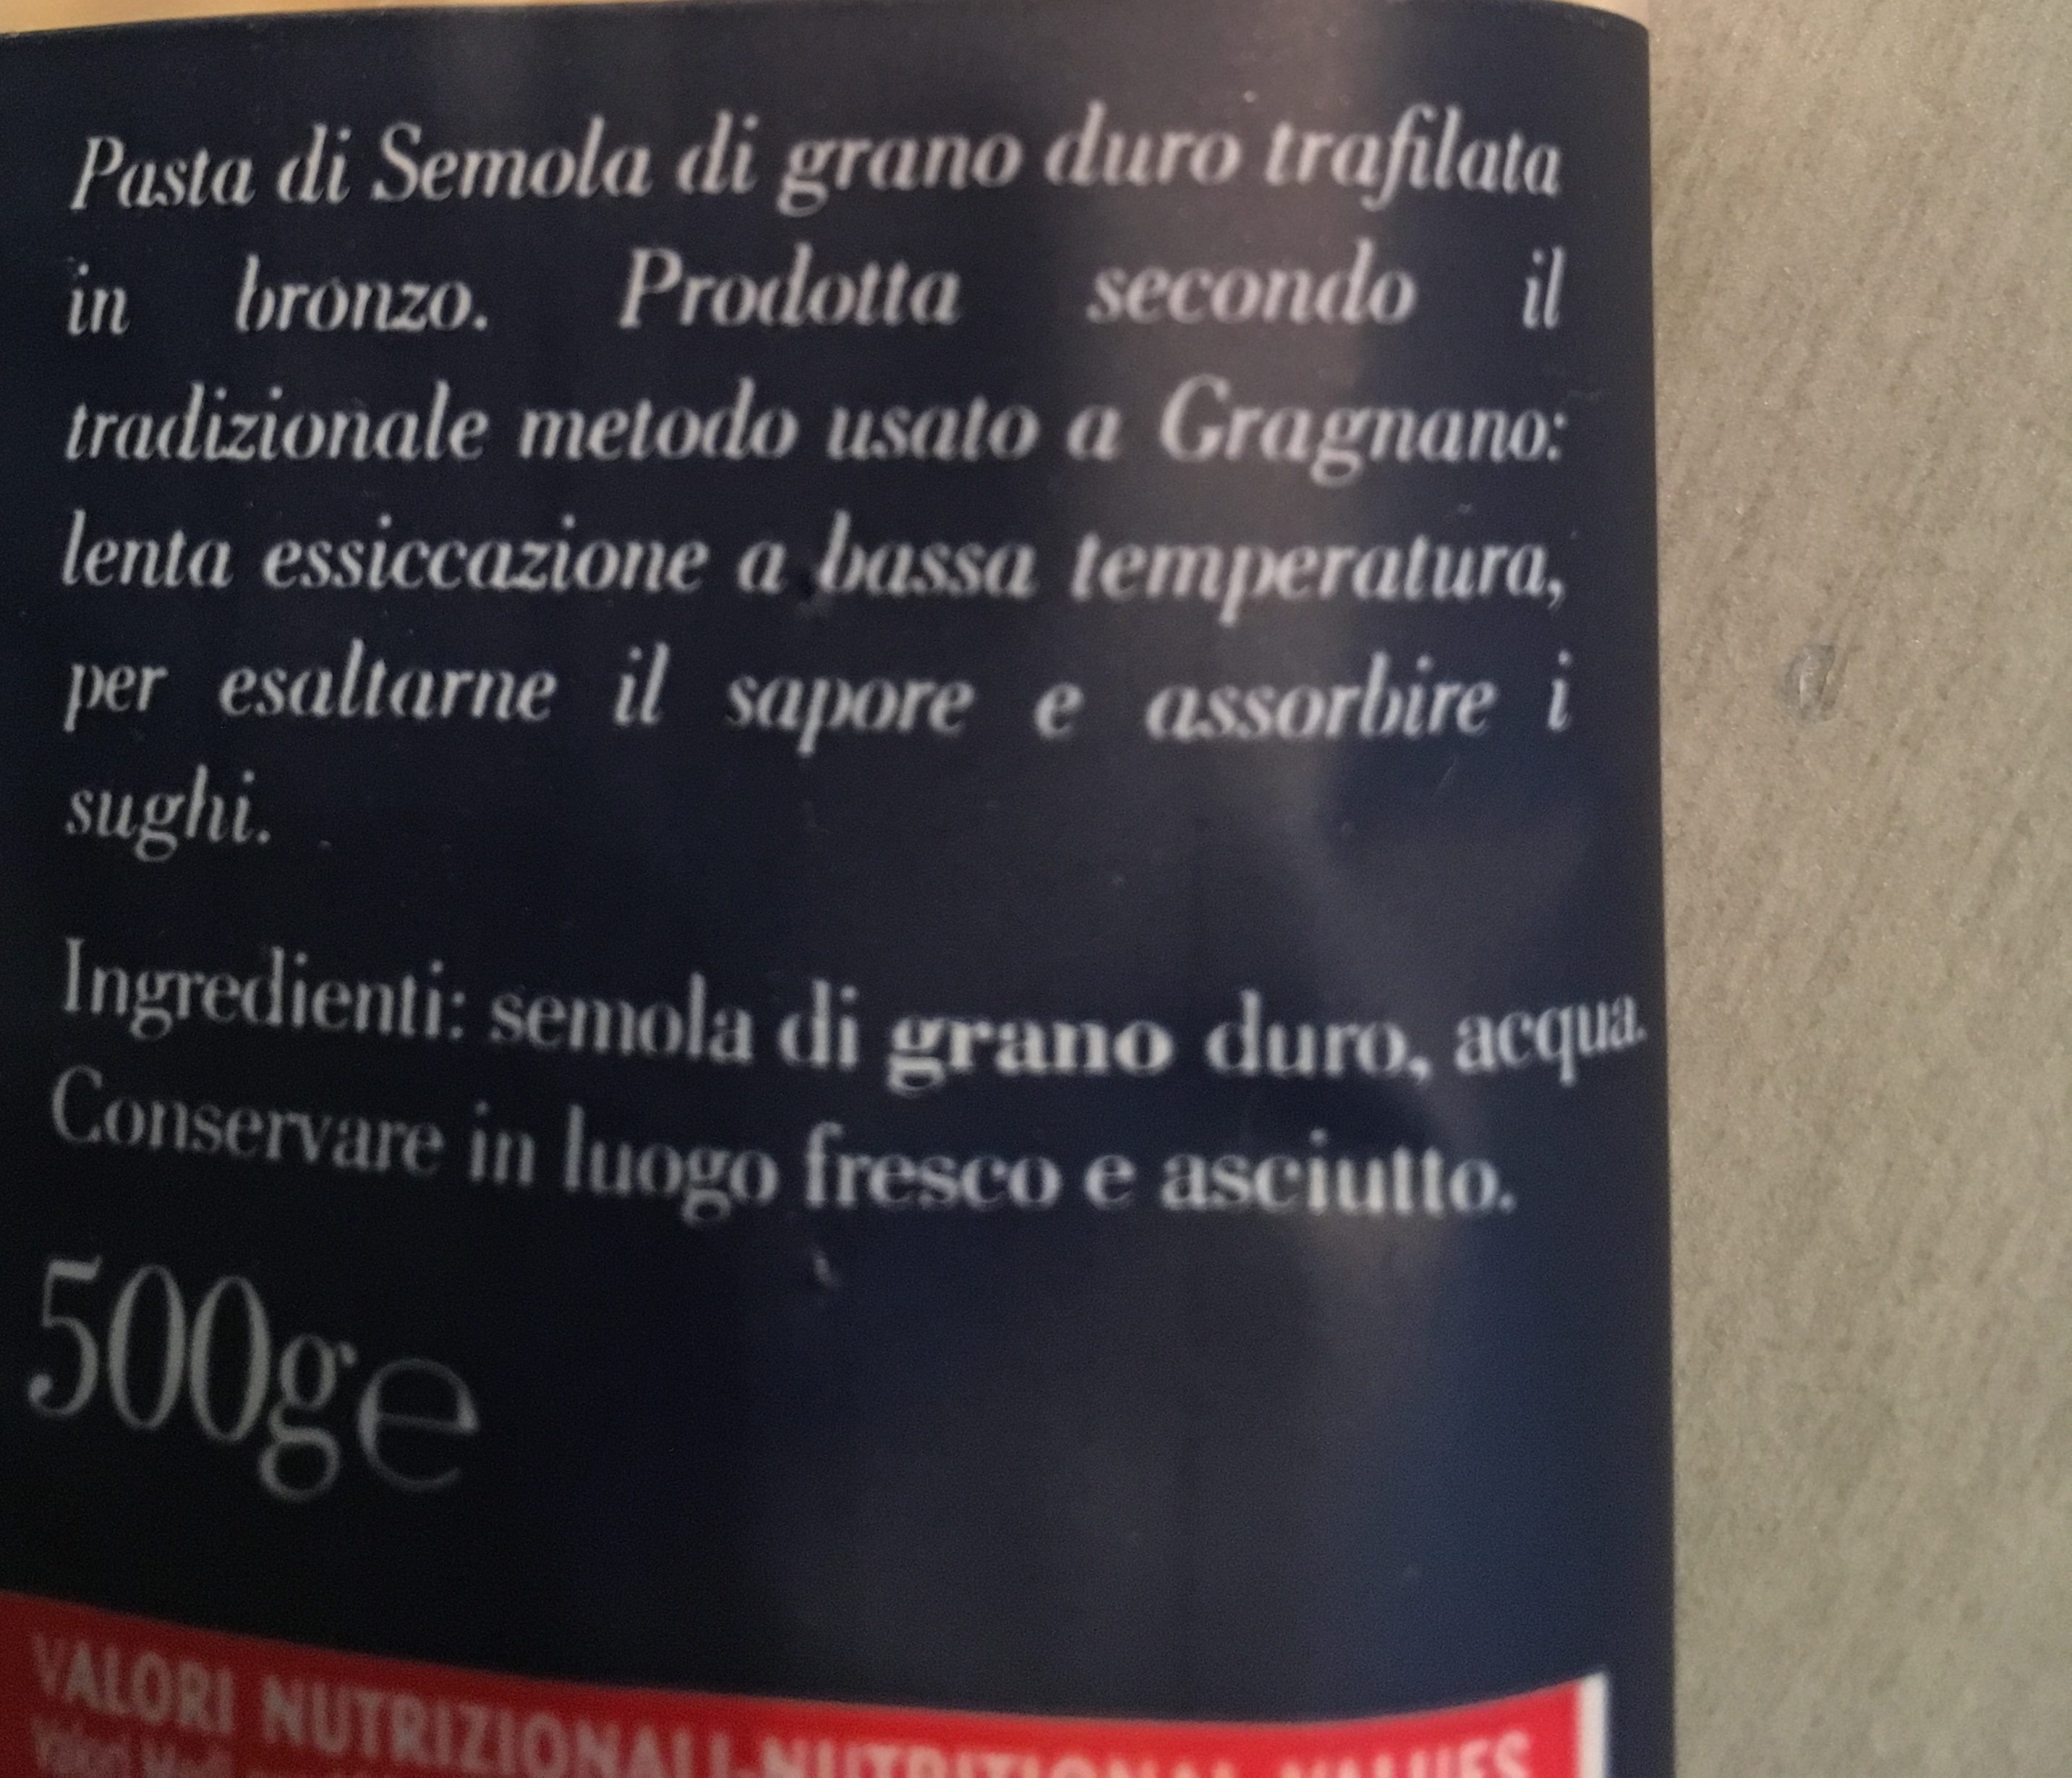 Linguine Gragnano I. g. p. - Ingredients - fr